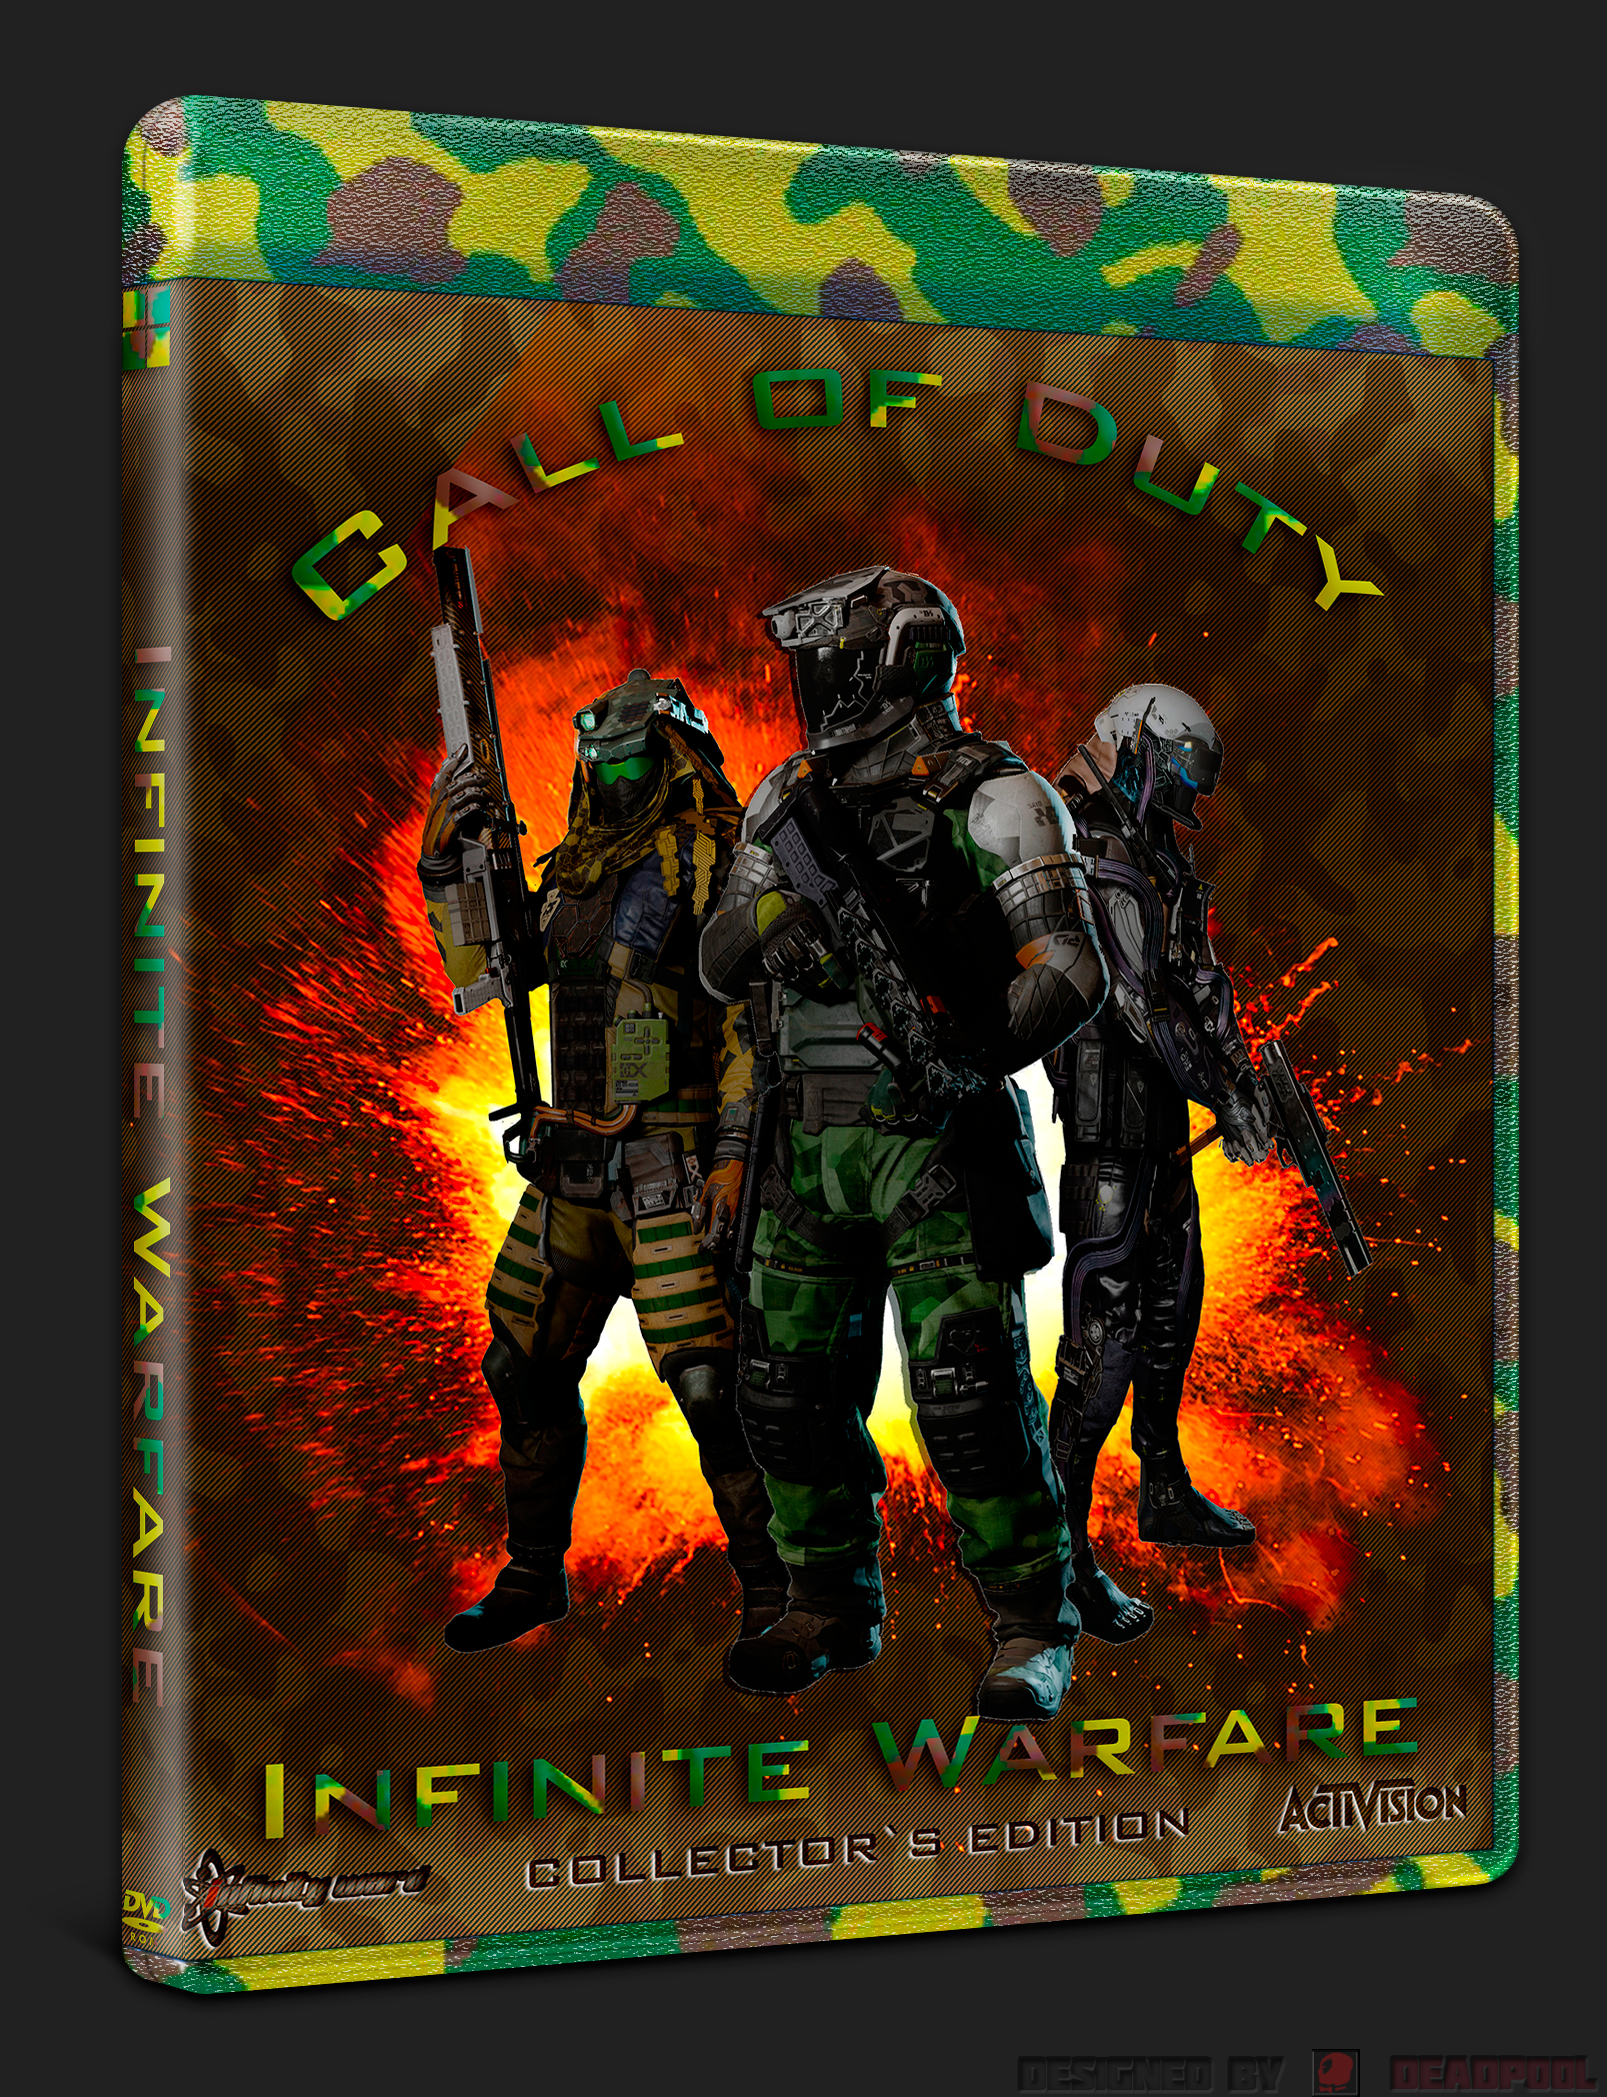 Call of Duty Infinite Warfare box cover